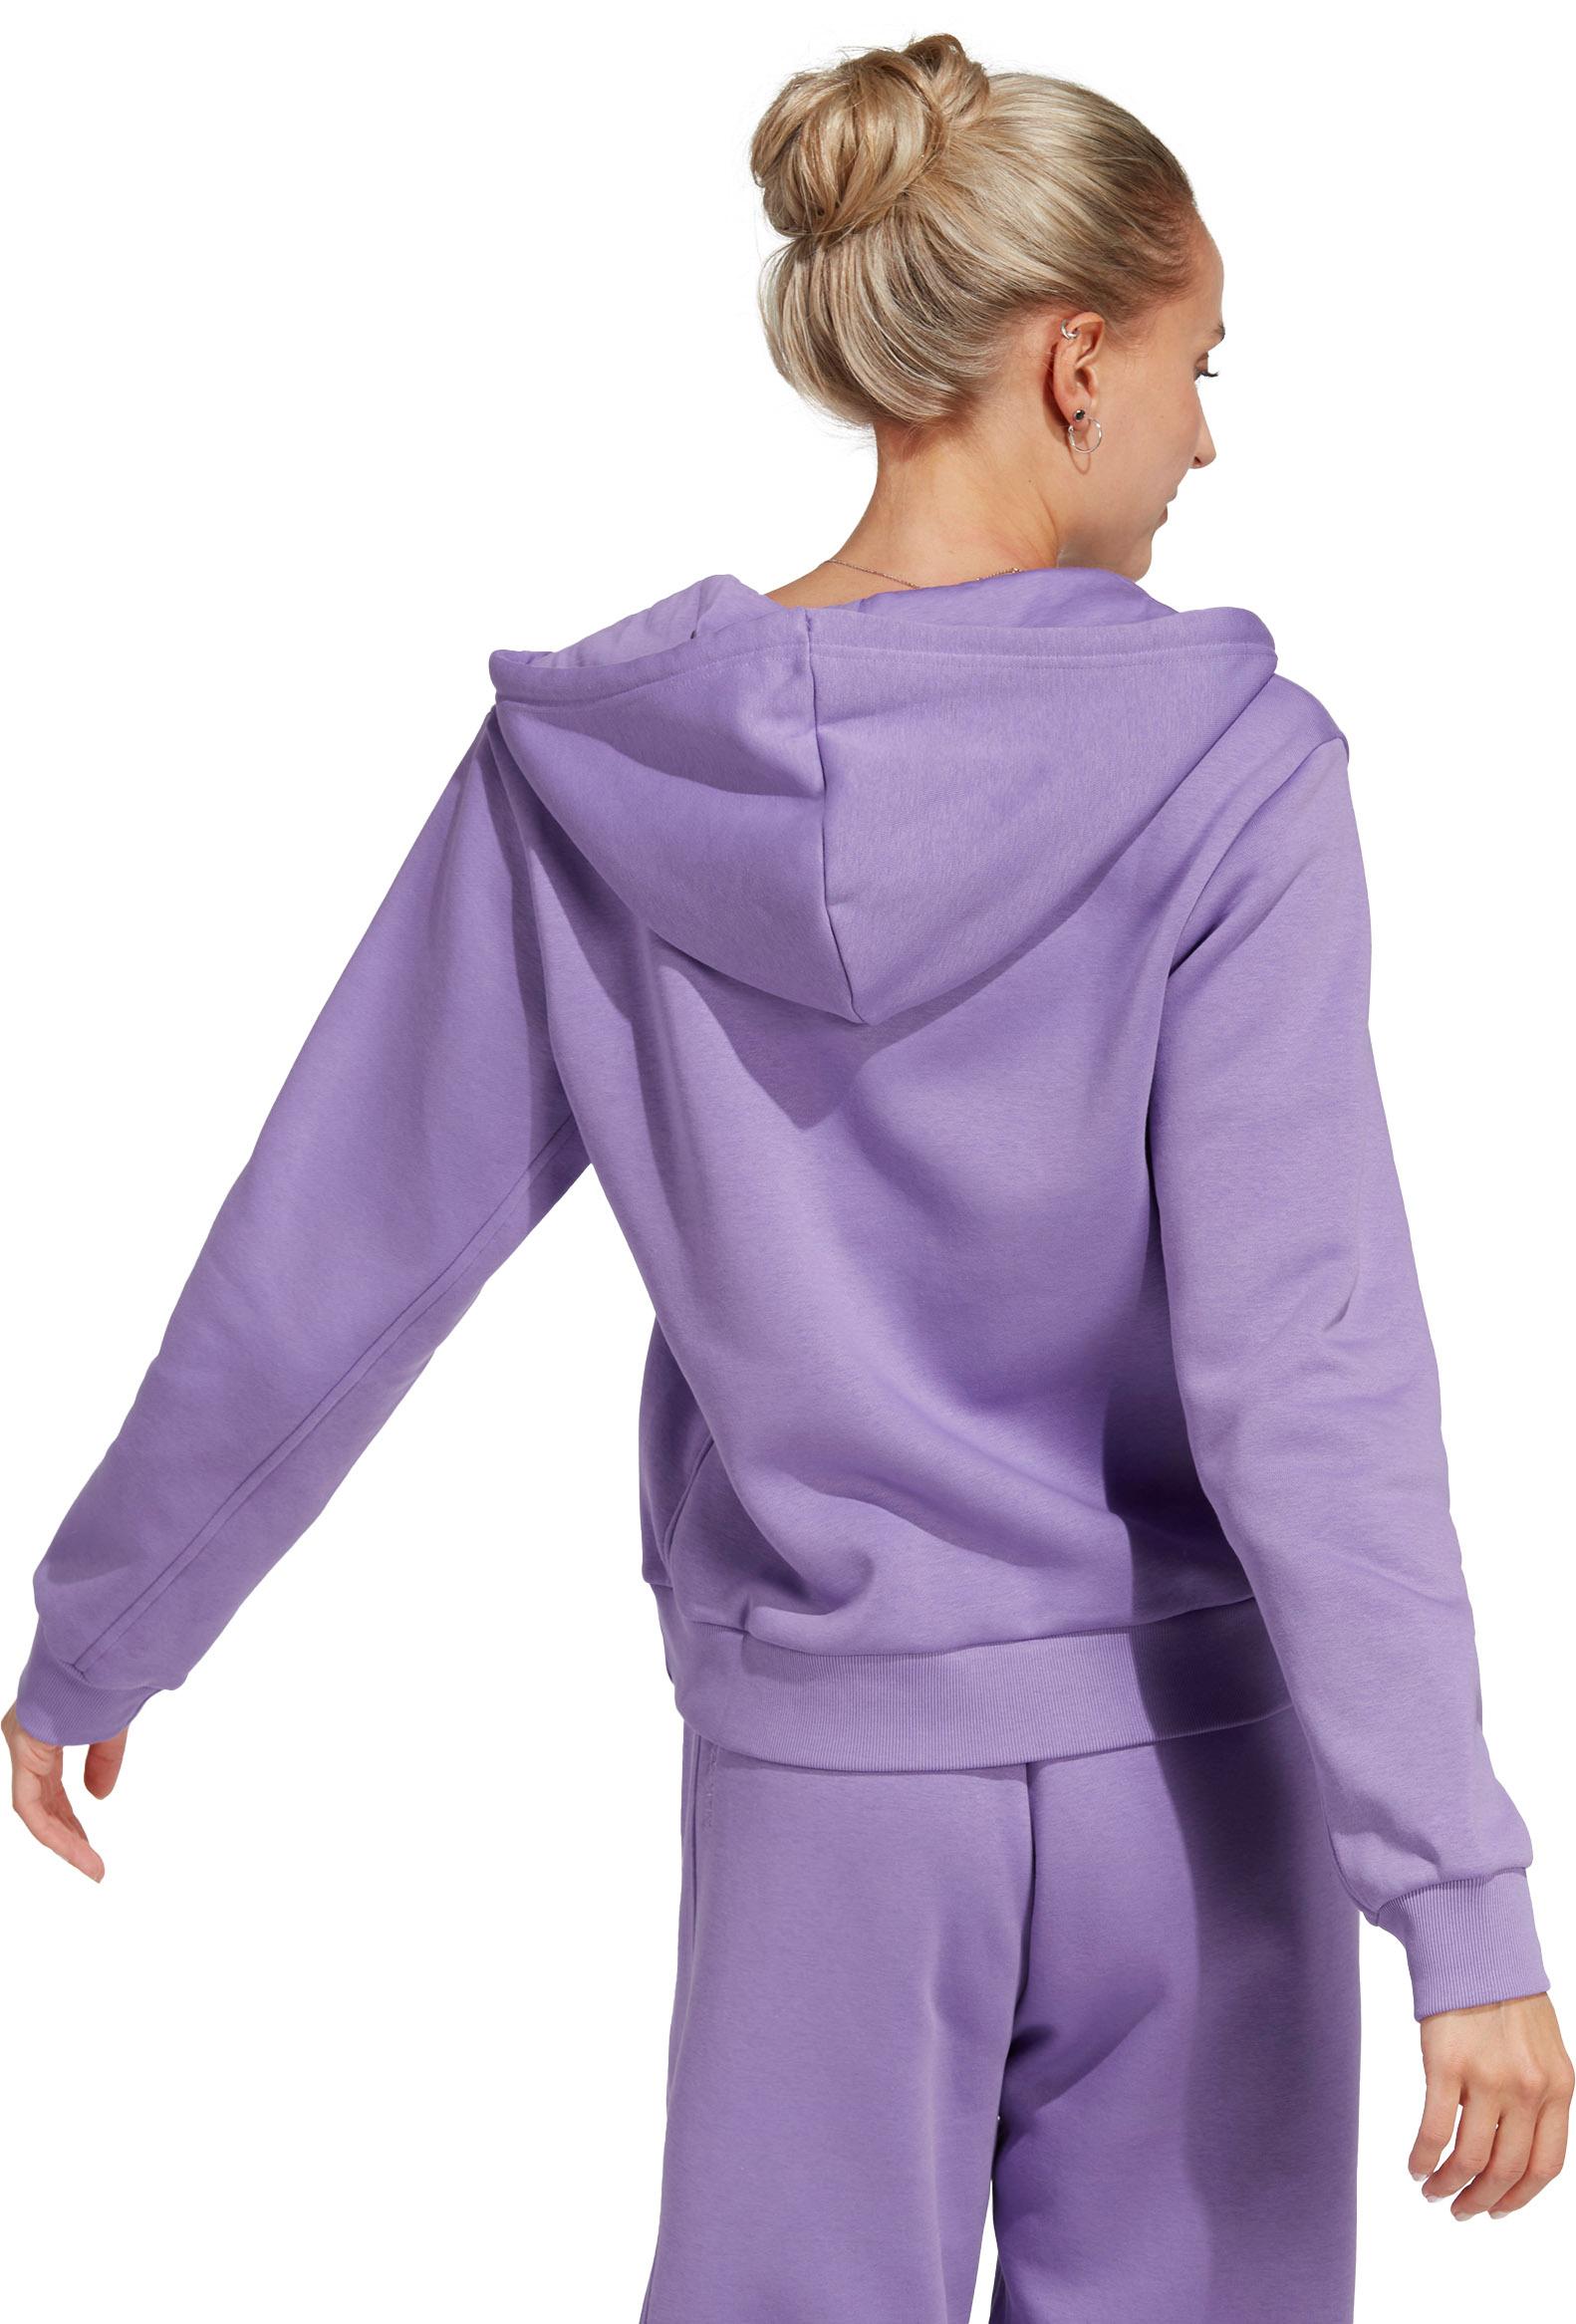 Adidas All Szn Sweatjacke Online von im Damen SportScheck violet fusion Shop kaufen